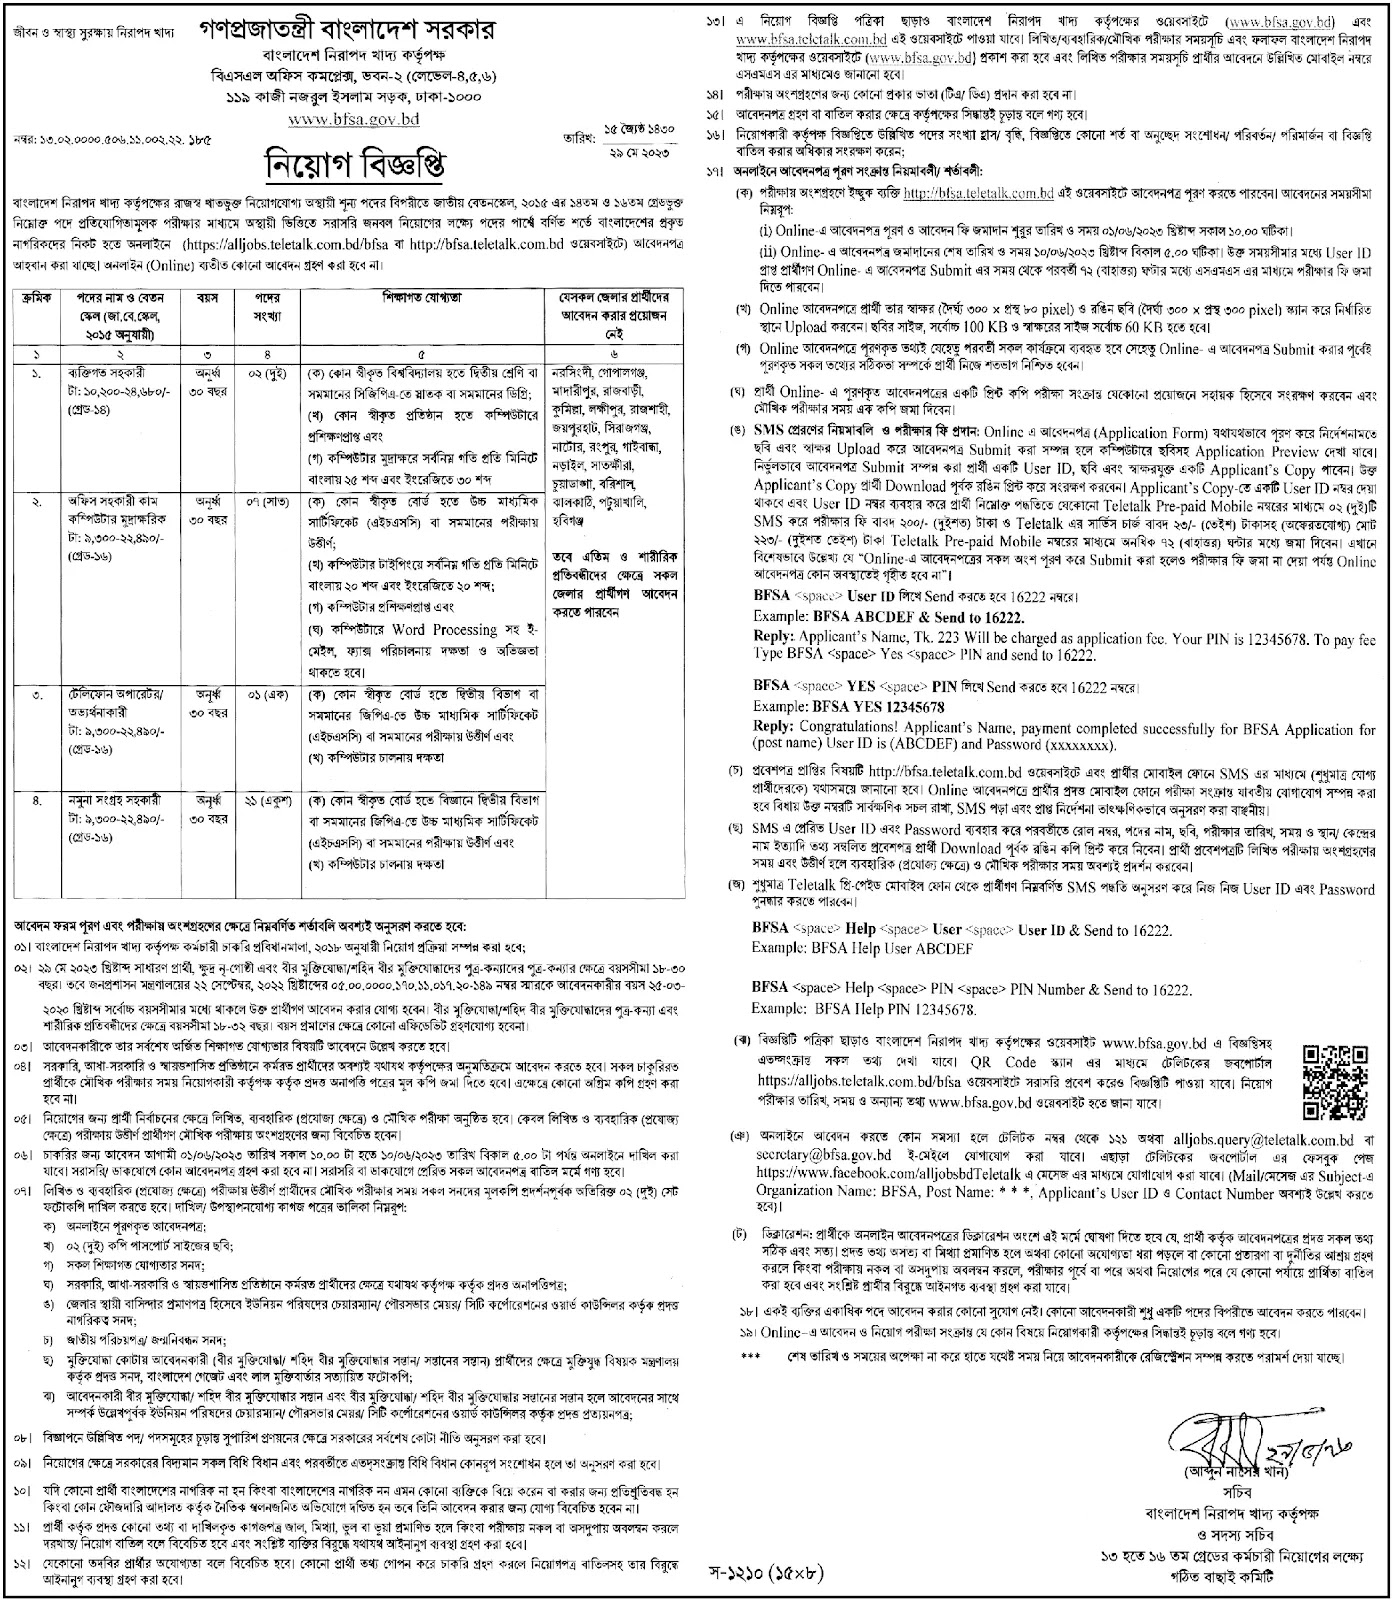 নিরাপদ খাদ্য কর্তৃপক্ষ নিয়োগ বিজ্ঞপ্তি ২০২৩ - Bangladesh Food Safety Authority BFSA Job Circular 2023 - BFSA Job Circular 2023 - সরকারি চাকরির খবর ২০২৩ - Govt jobs circular 2023